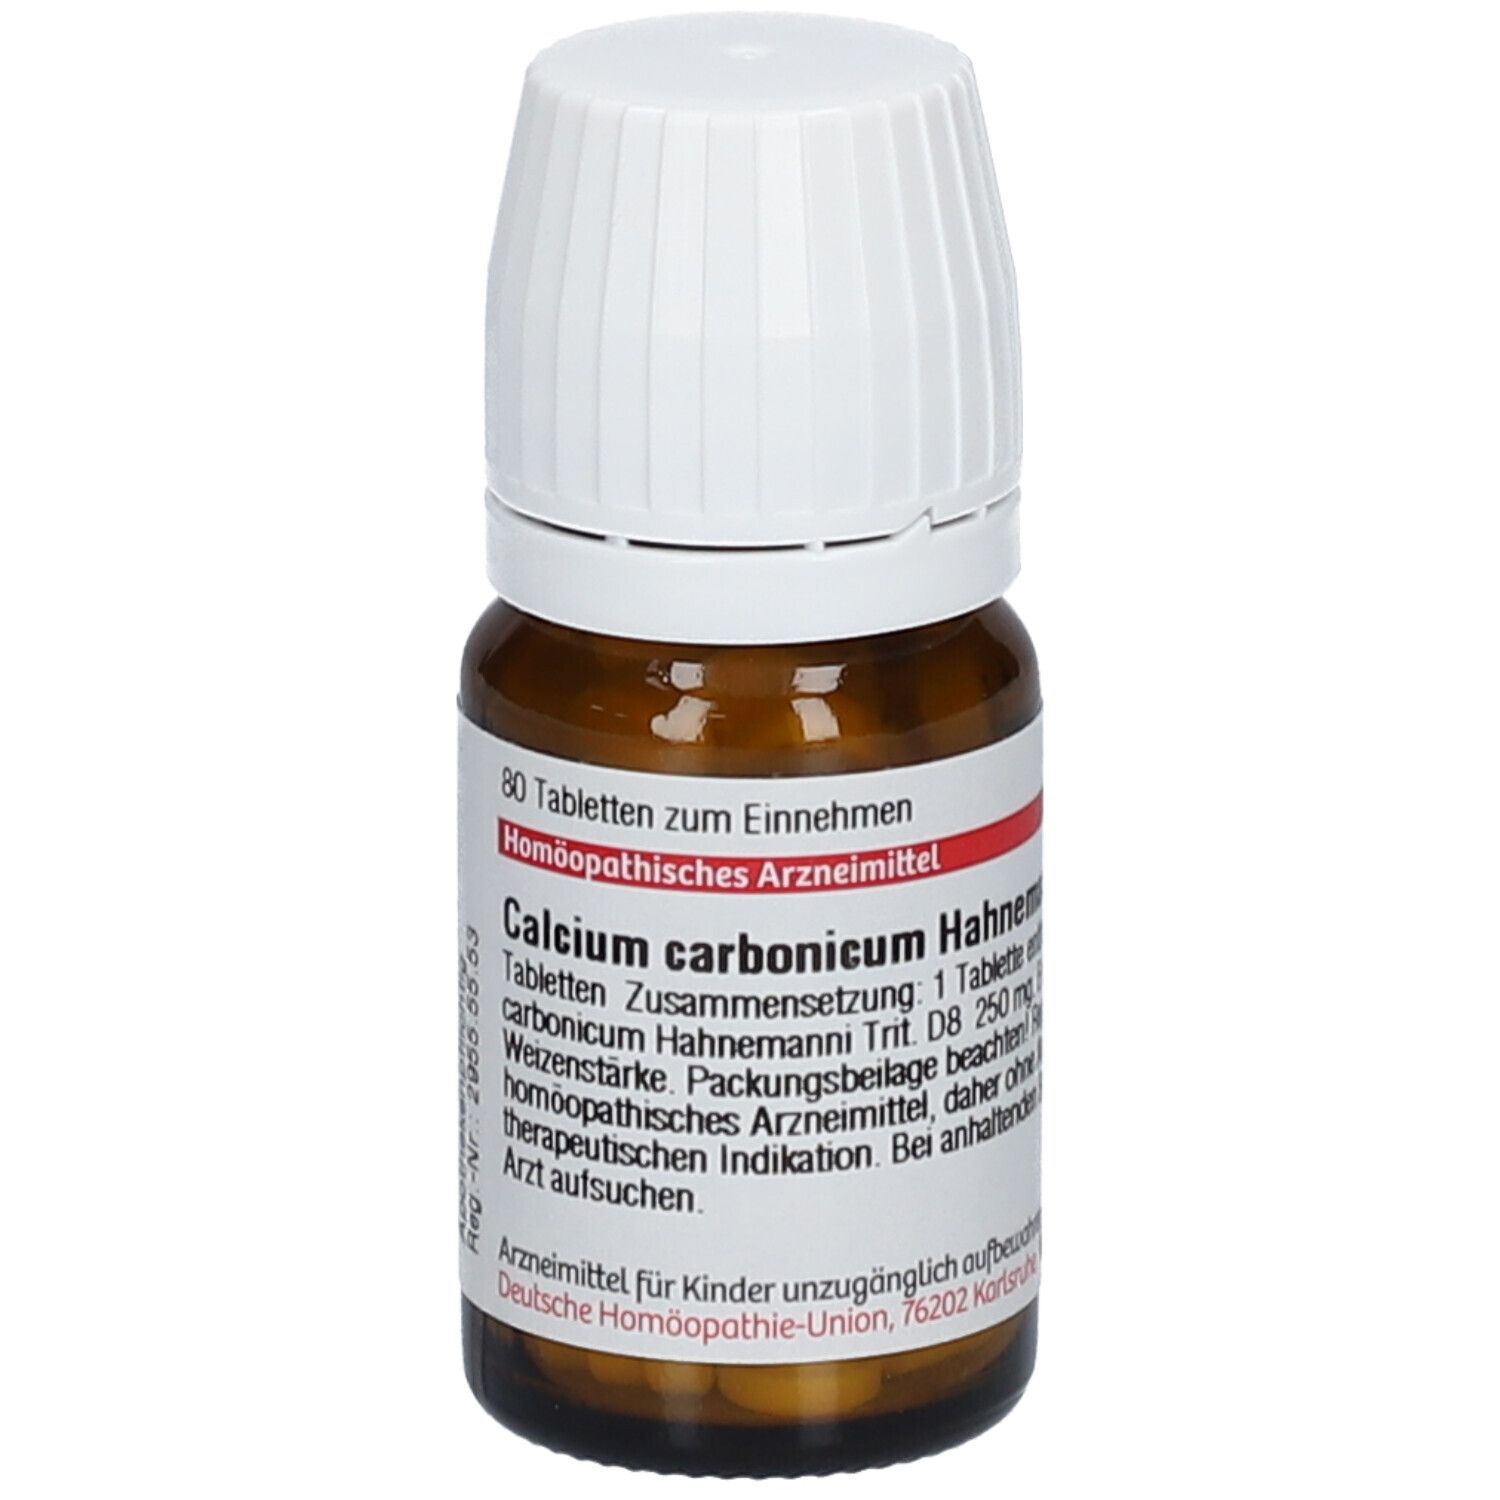 DHU Calcium Carbonicum Hahnemanni D8